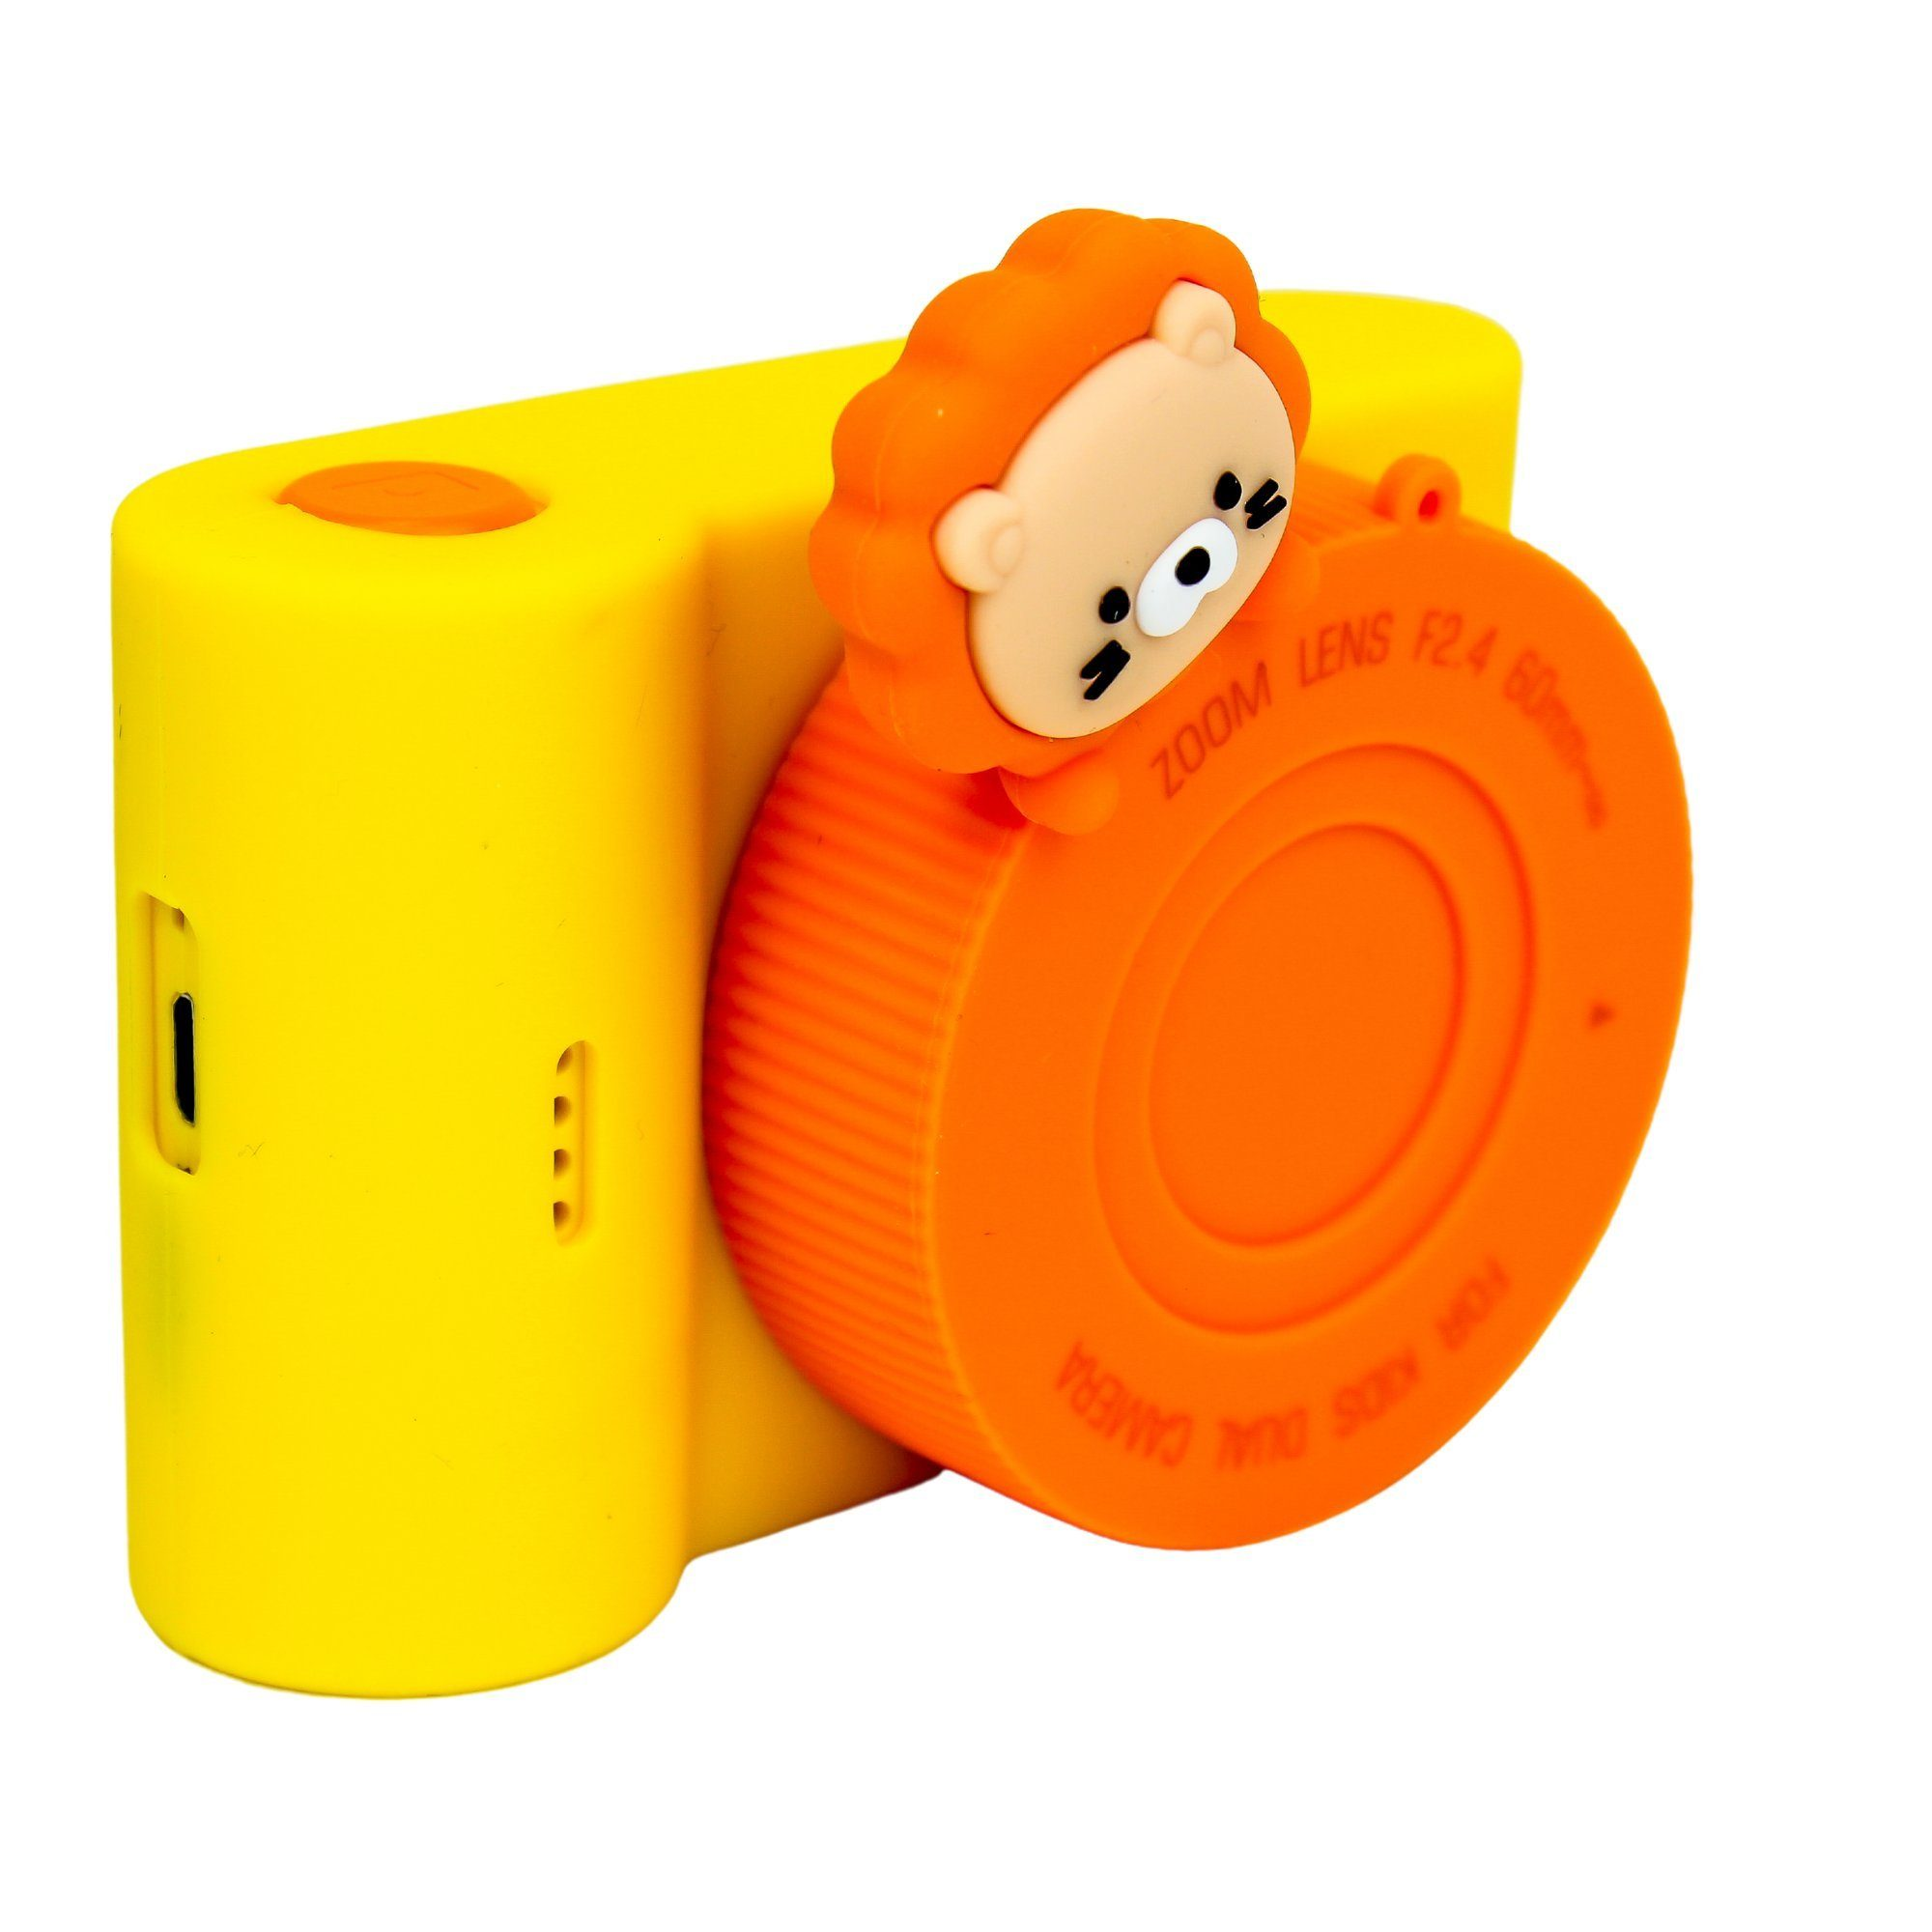 DOTMALL C5 Löwe KK886 Kinder-Digitalkamera Orange